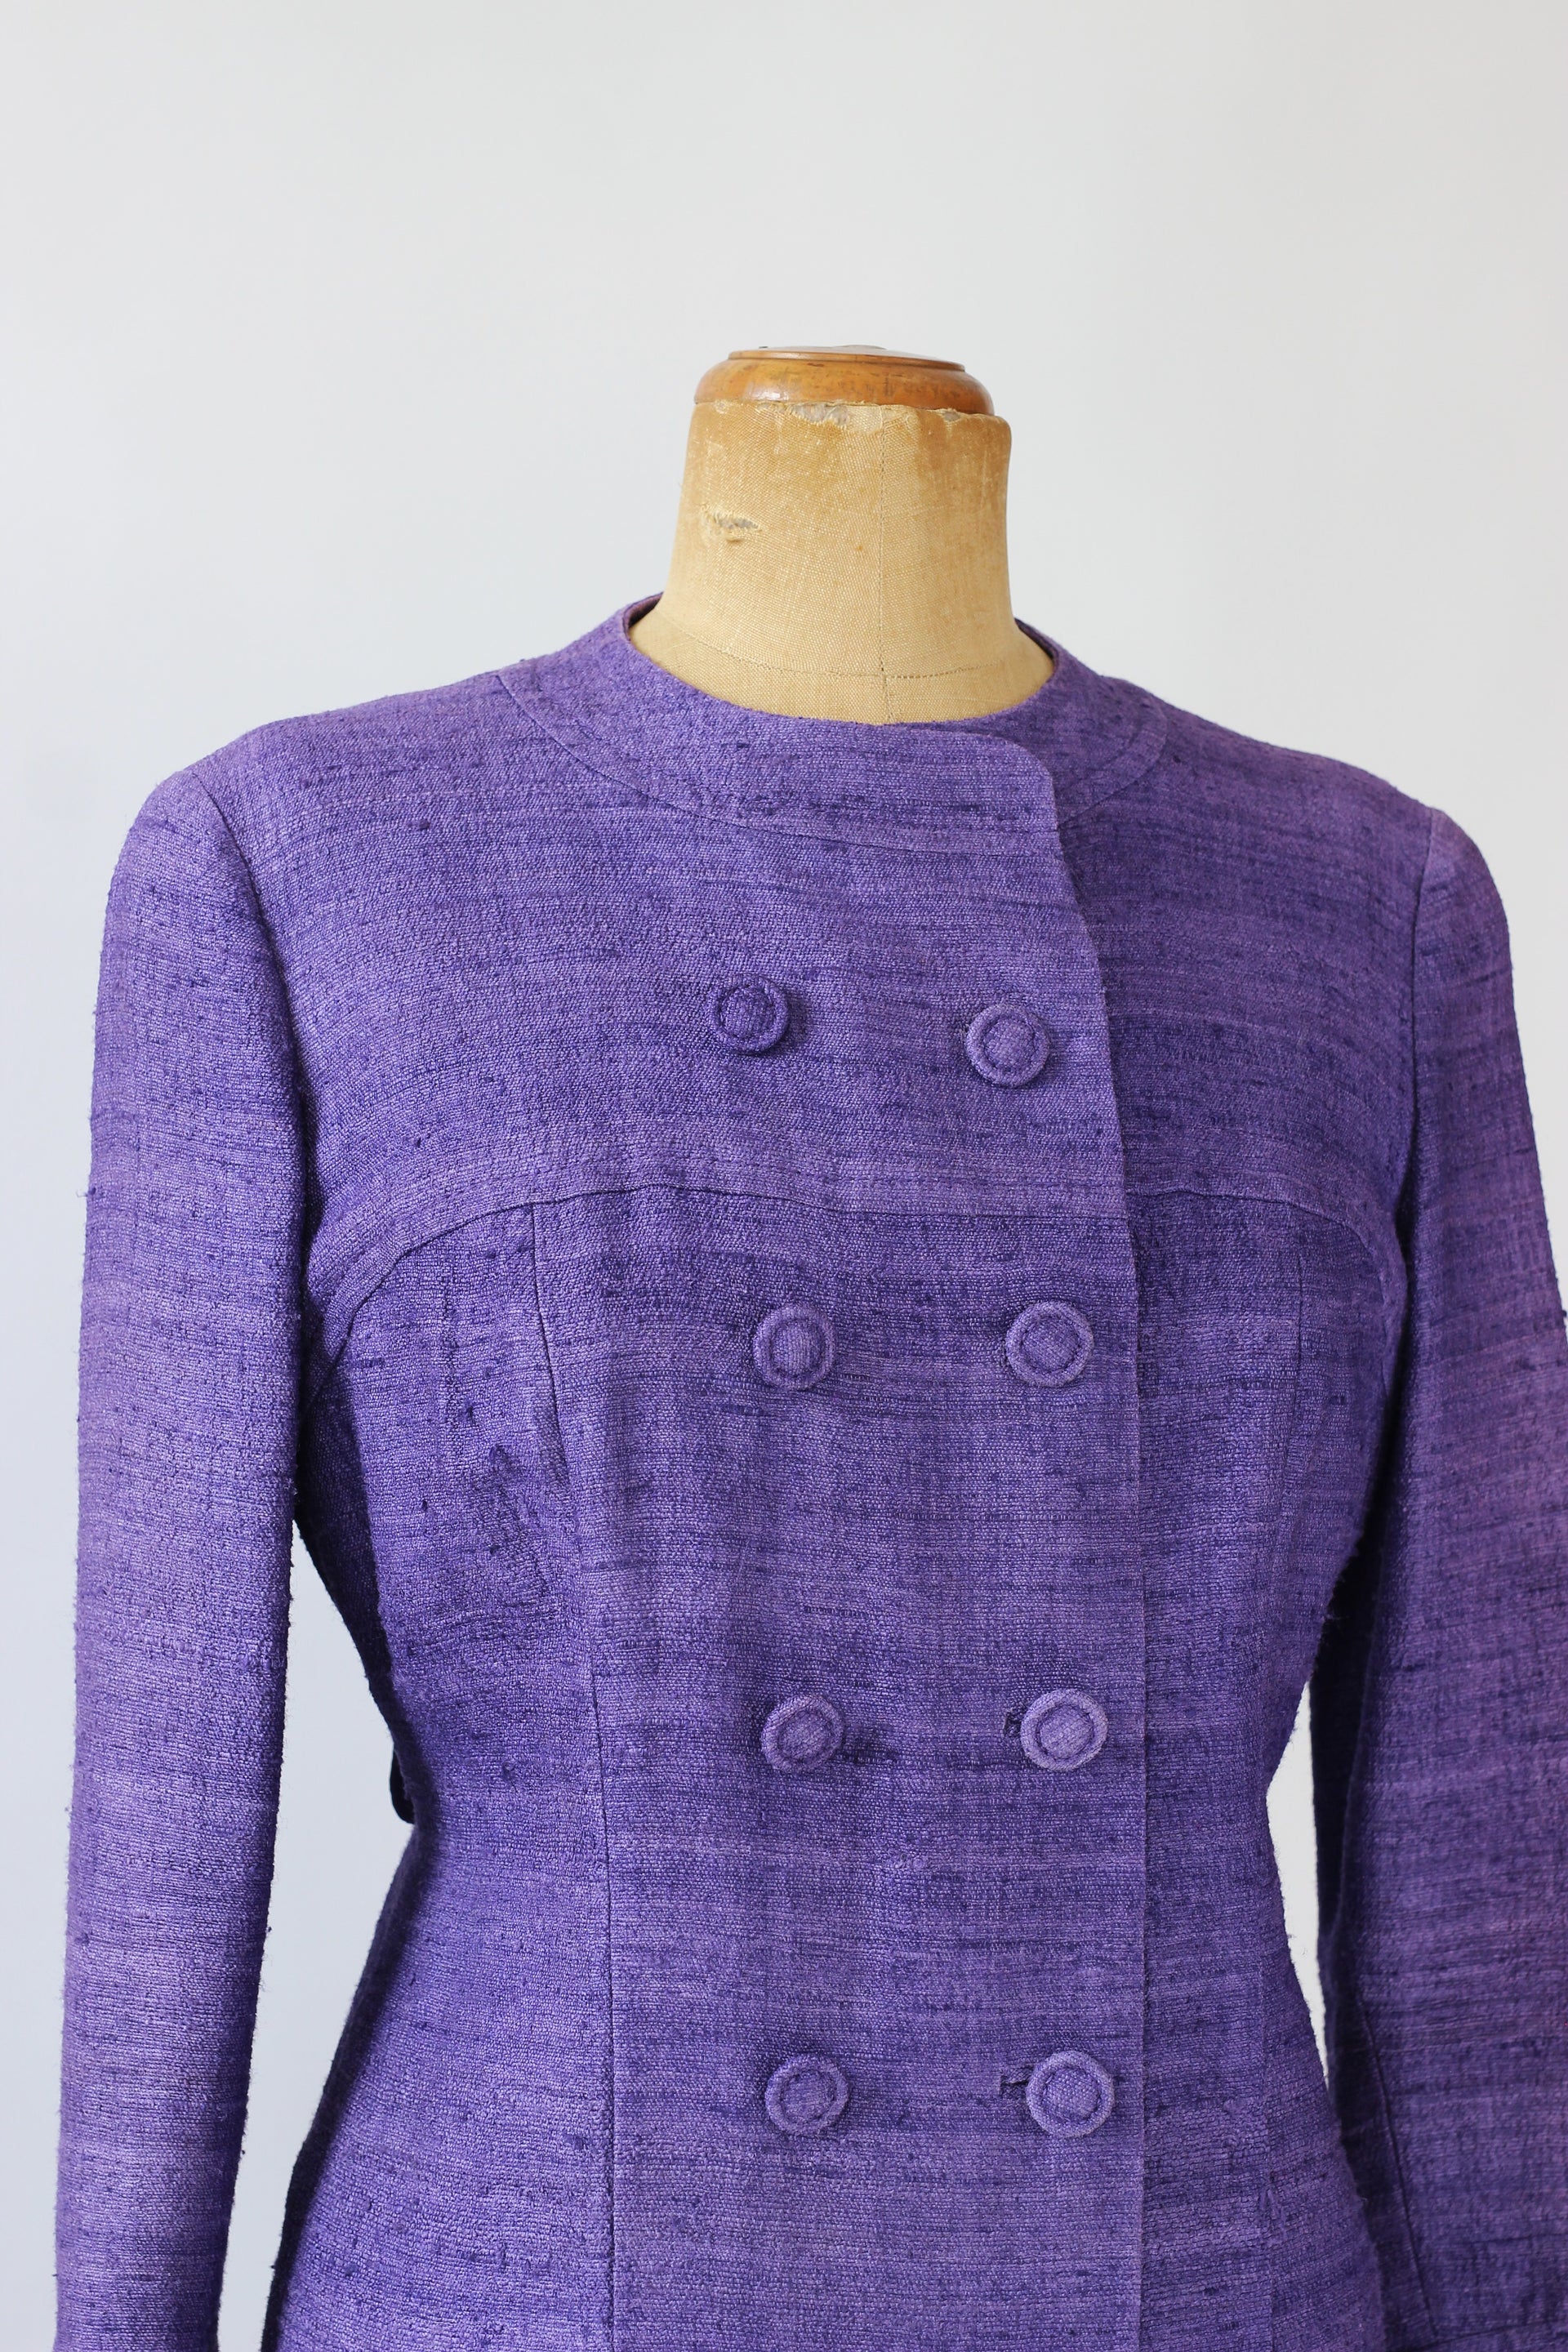 1960s Purple Raw Silk Dress/Coat//Size M/L